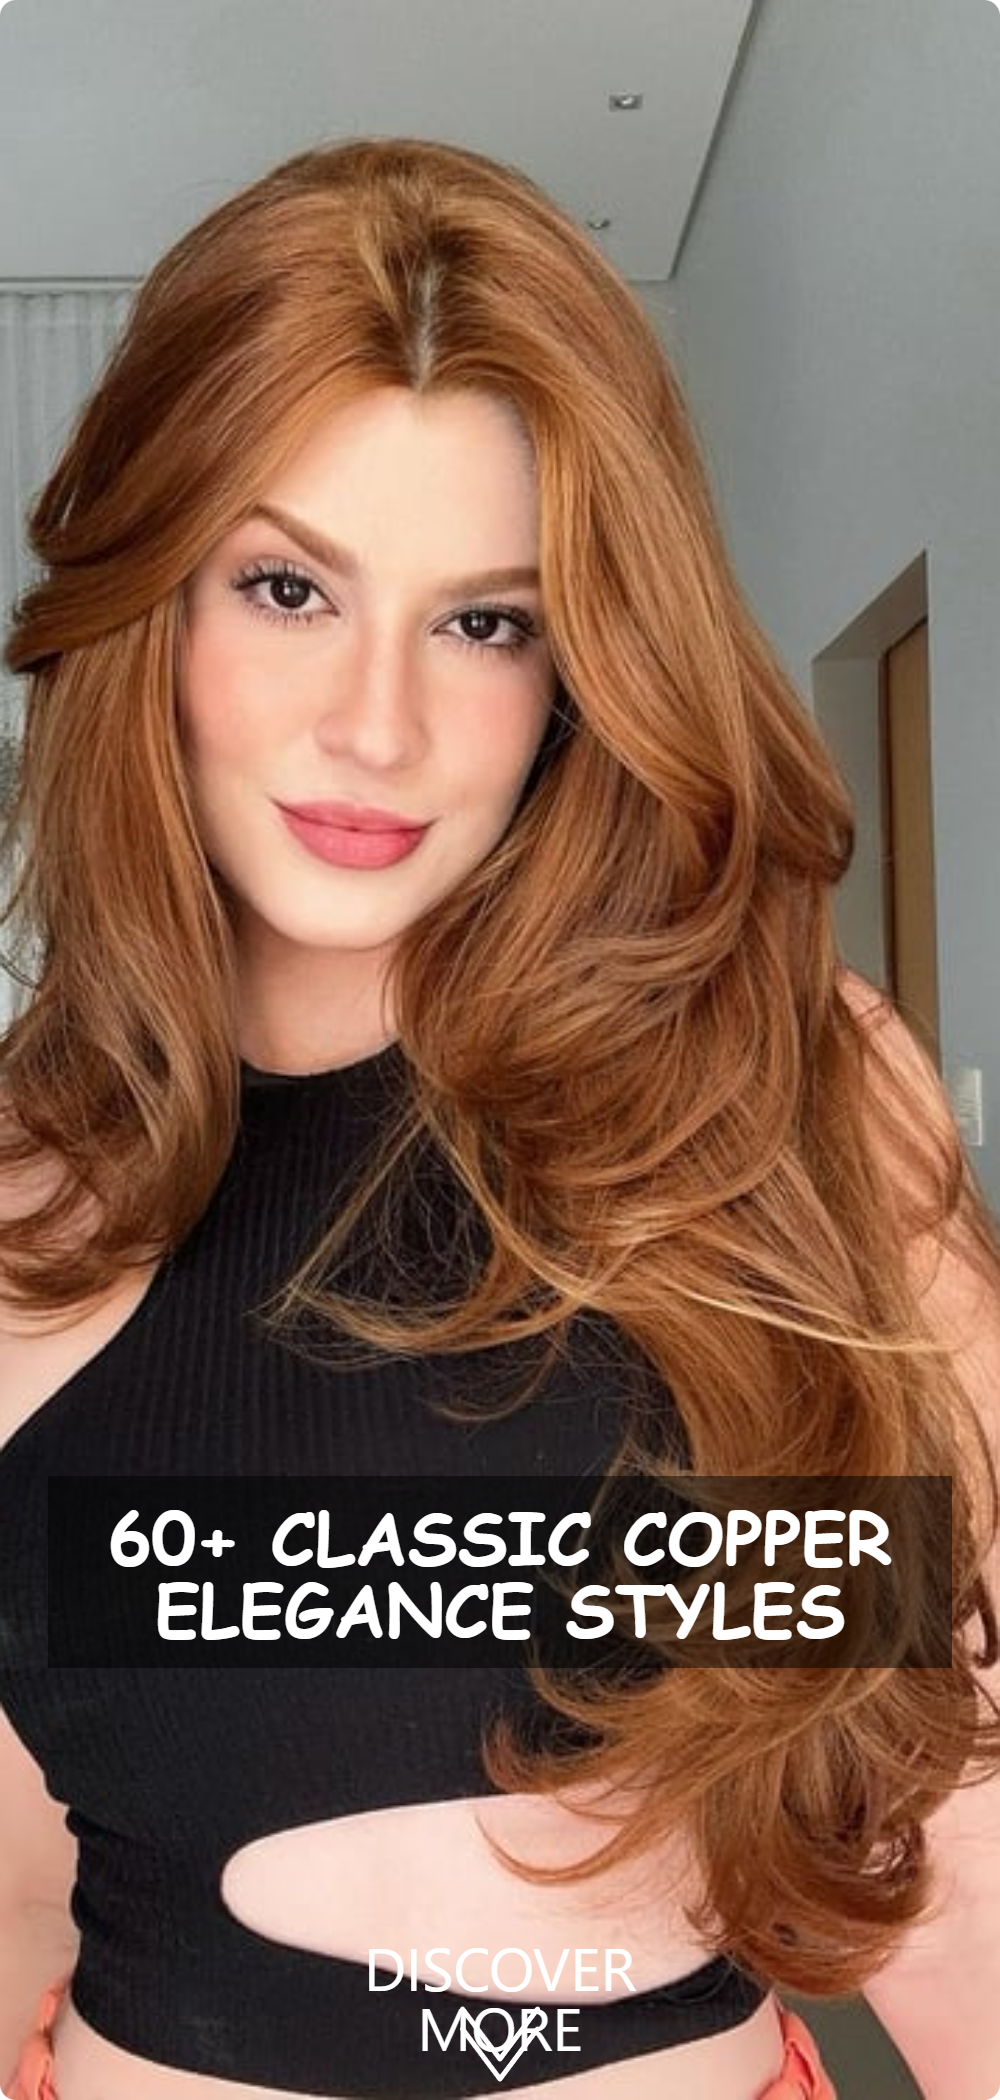 Classic Copper Elegance